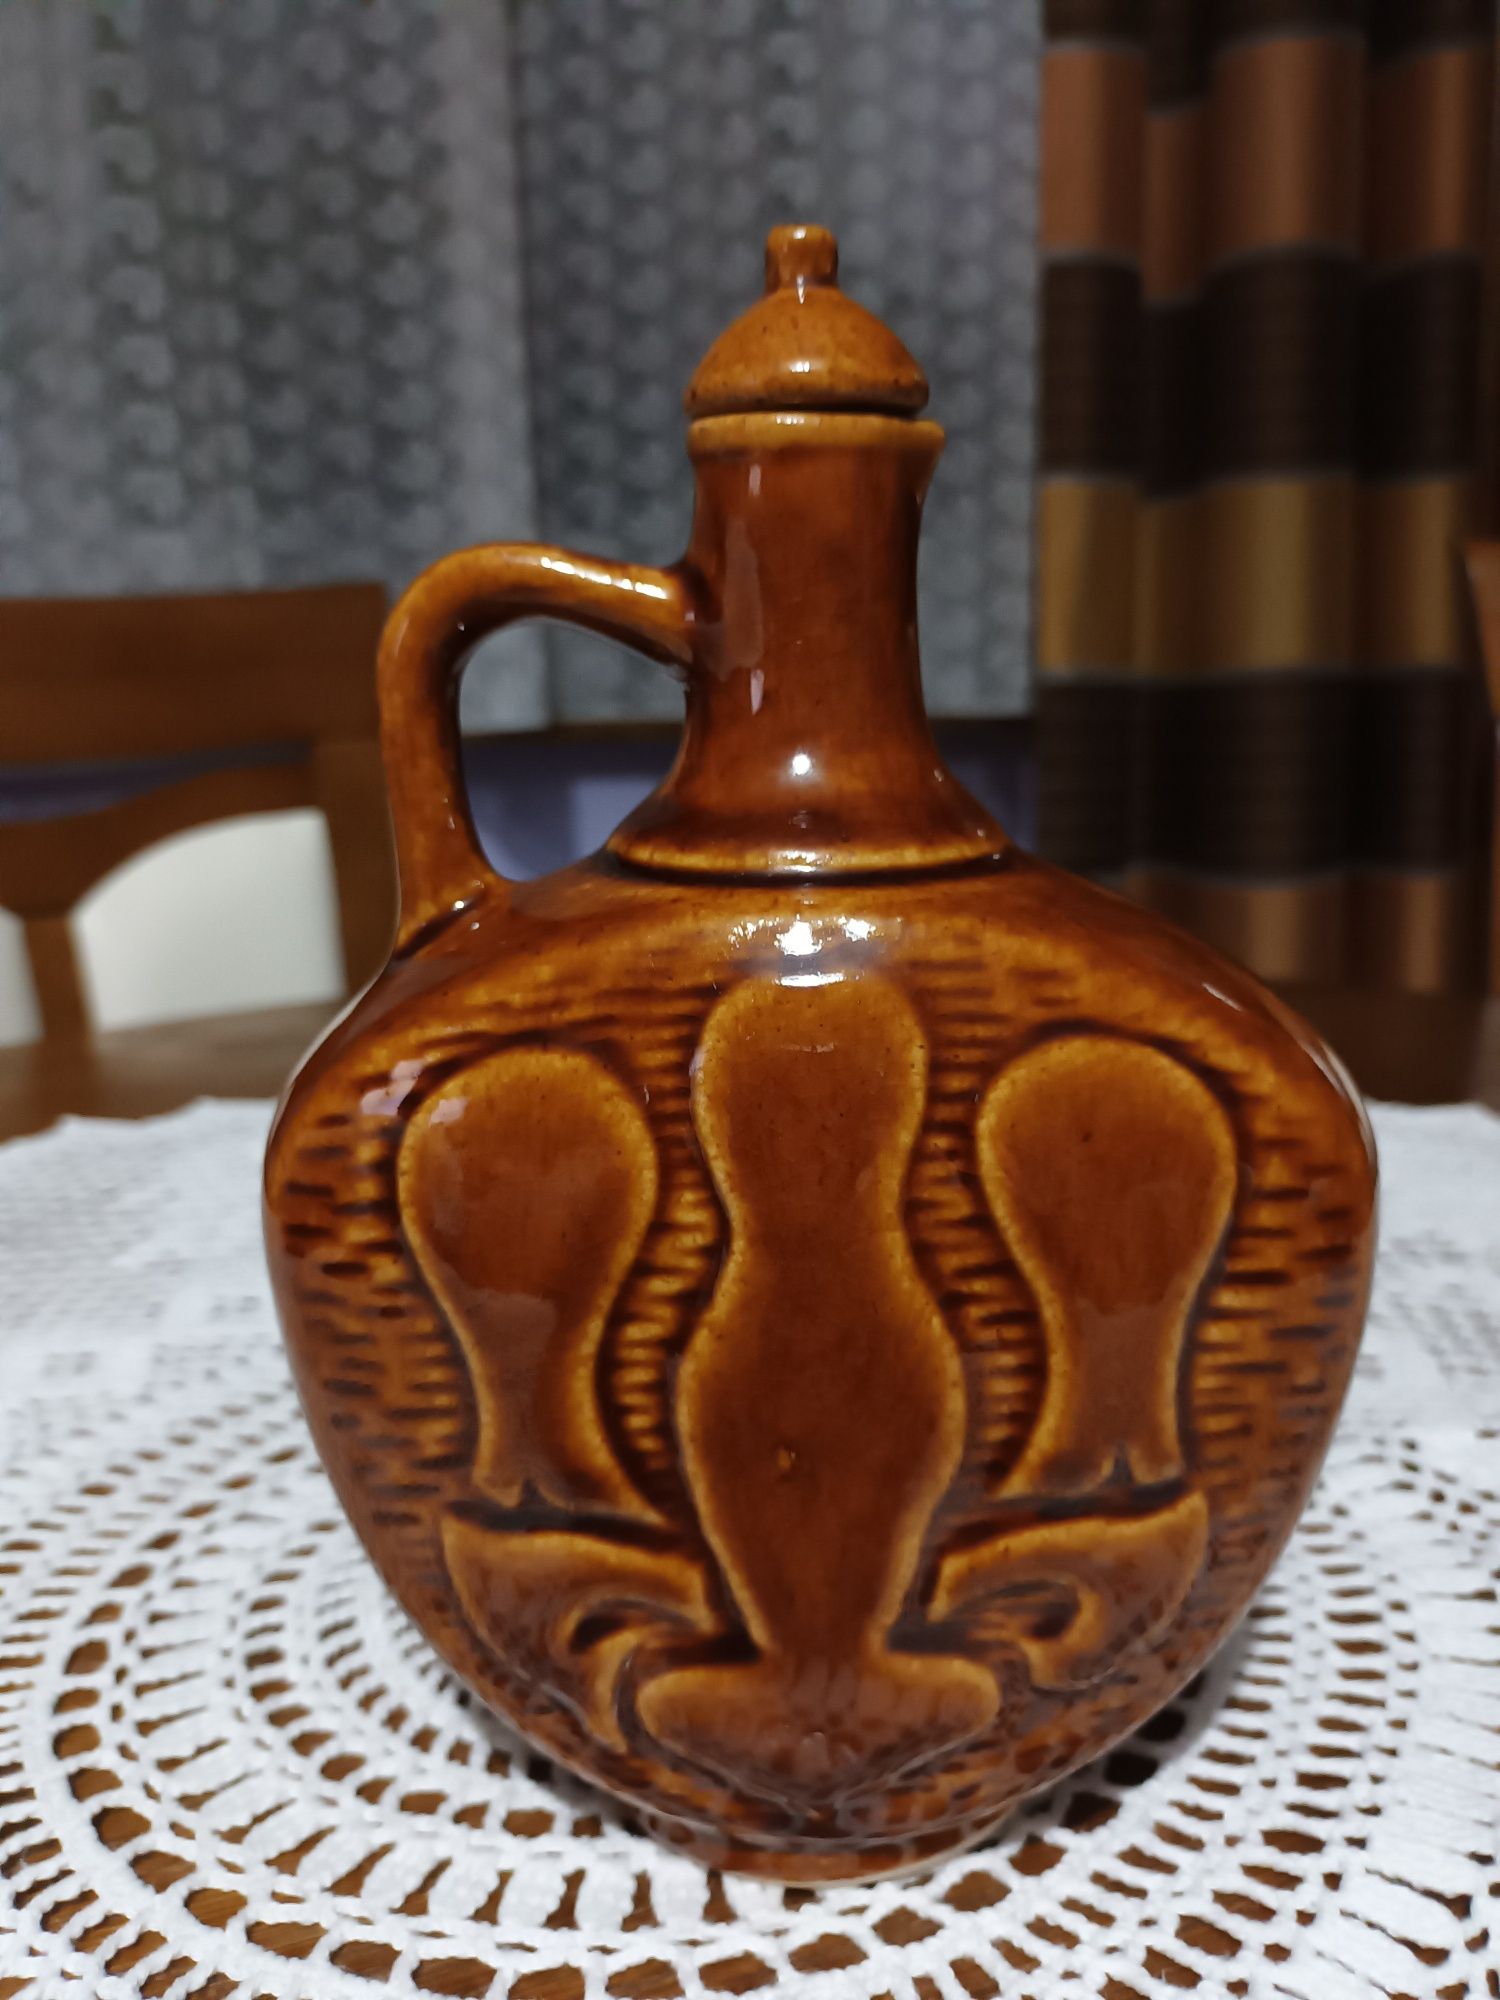 Karafka ceramiczna vintage